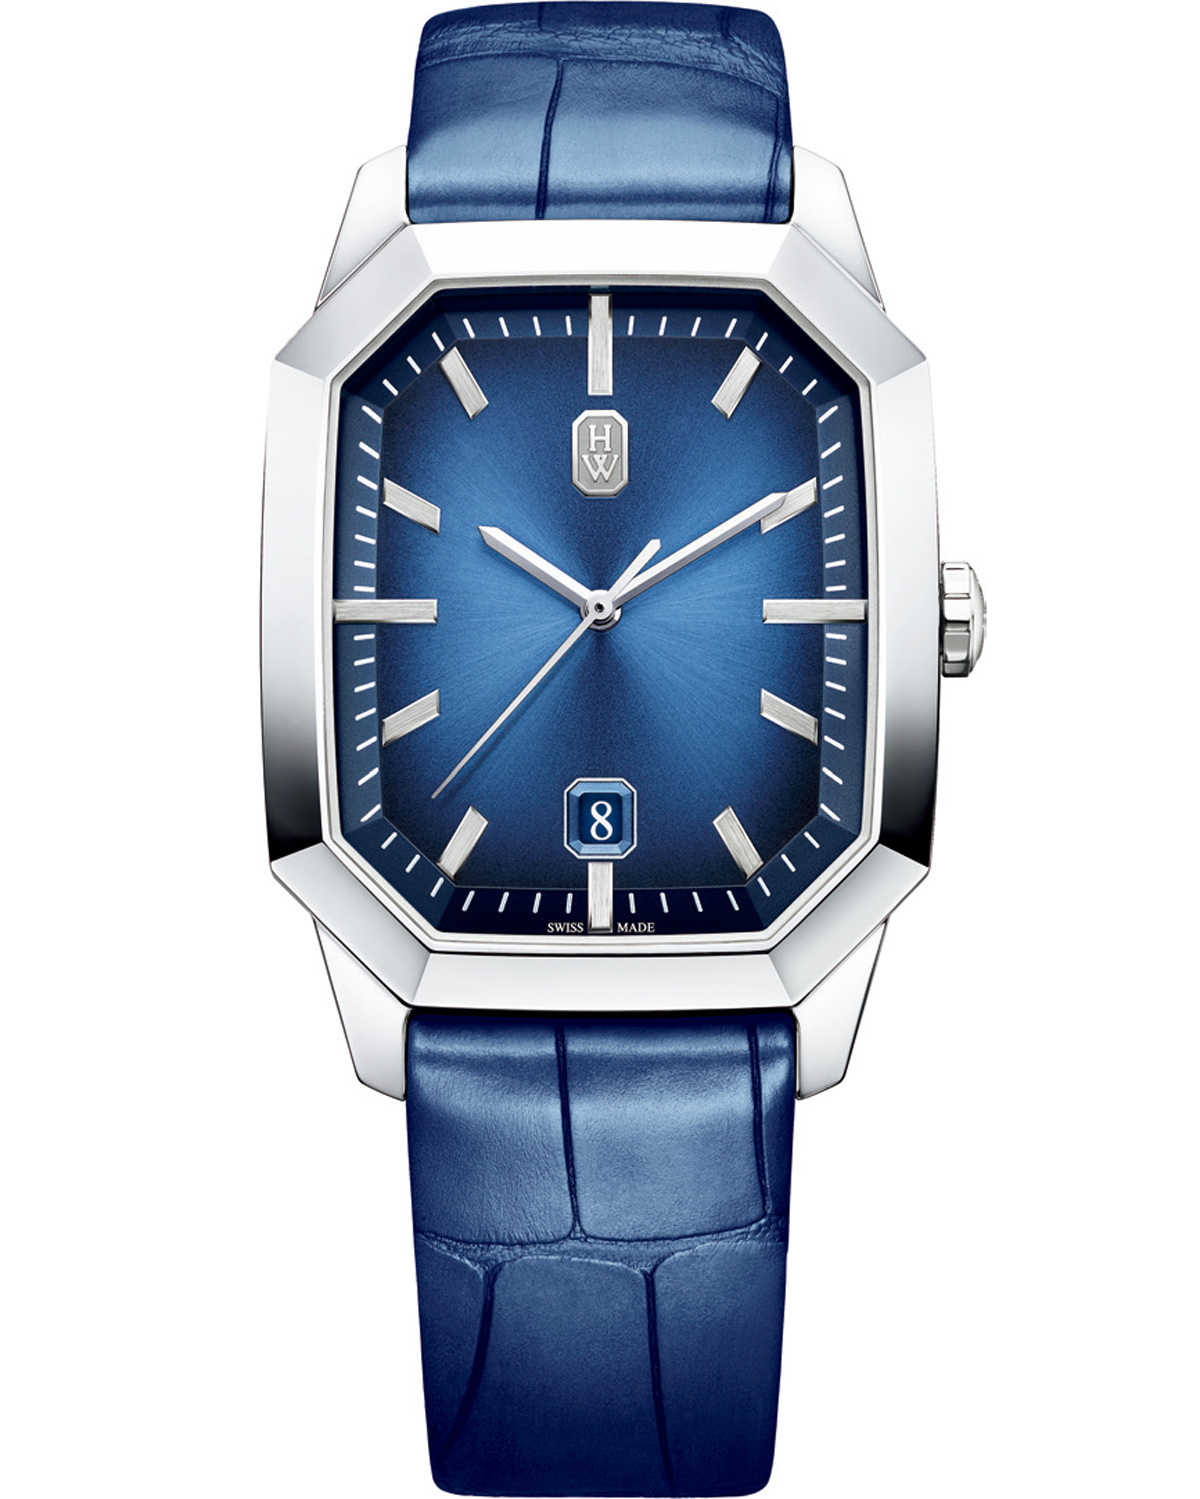 お求めやすく価格改定 ♢即購入OK♢ ❁ᴗ͈ˬᴗ͈ ミリターリービジネス腕時計ブルー青 30m防水